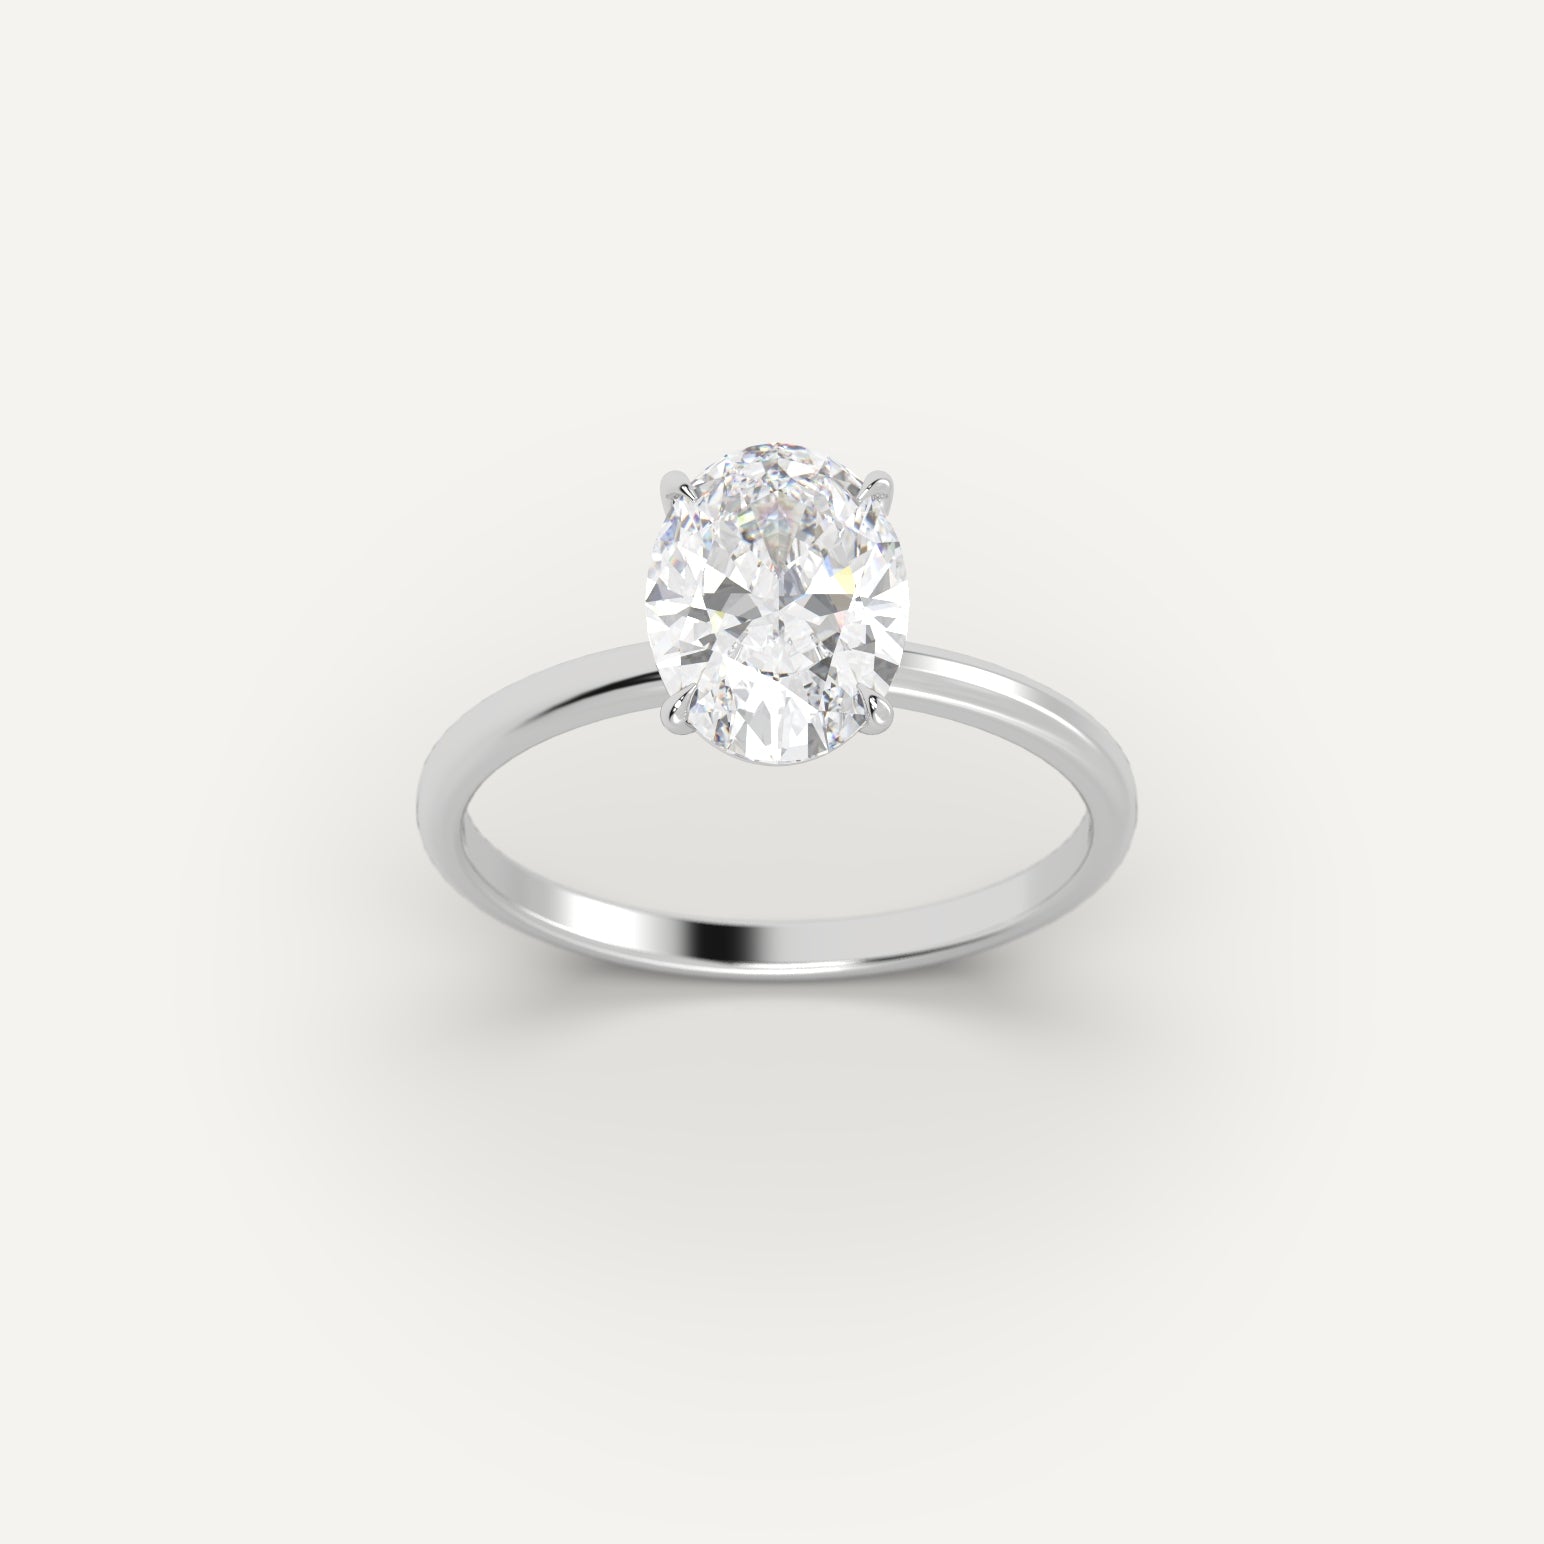 White Gold 1.5 Carat Engagement Ring